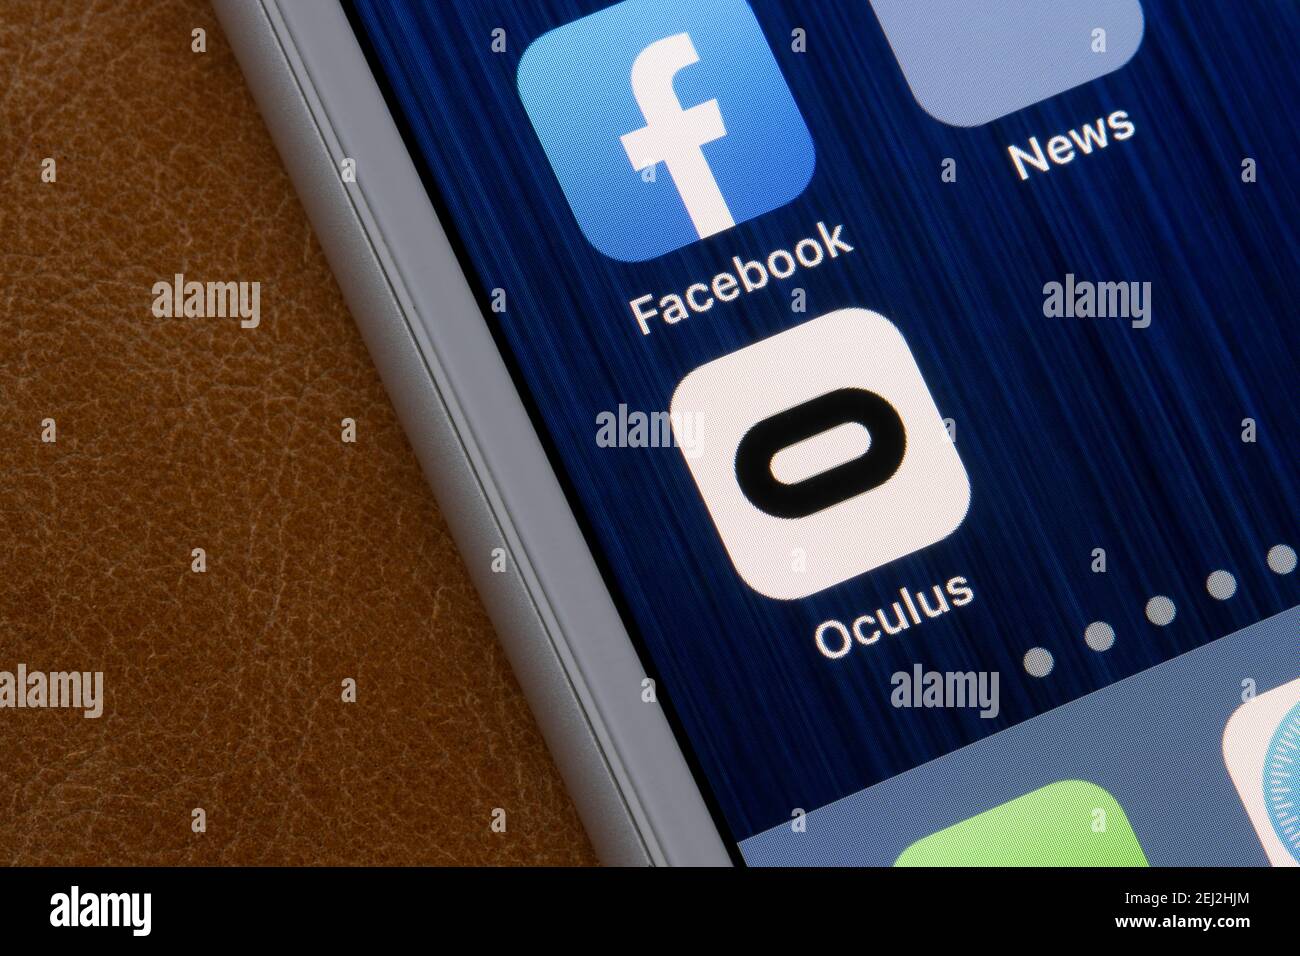 L'icona dell'app Oculus viene visualizzata su un iPhone. Oculus è un marchio di Facebook Technologies, LLC, che produce visori per realtà virtuale, tra cui le linee Rift e quest. Foto Stock